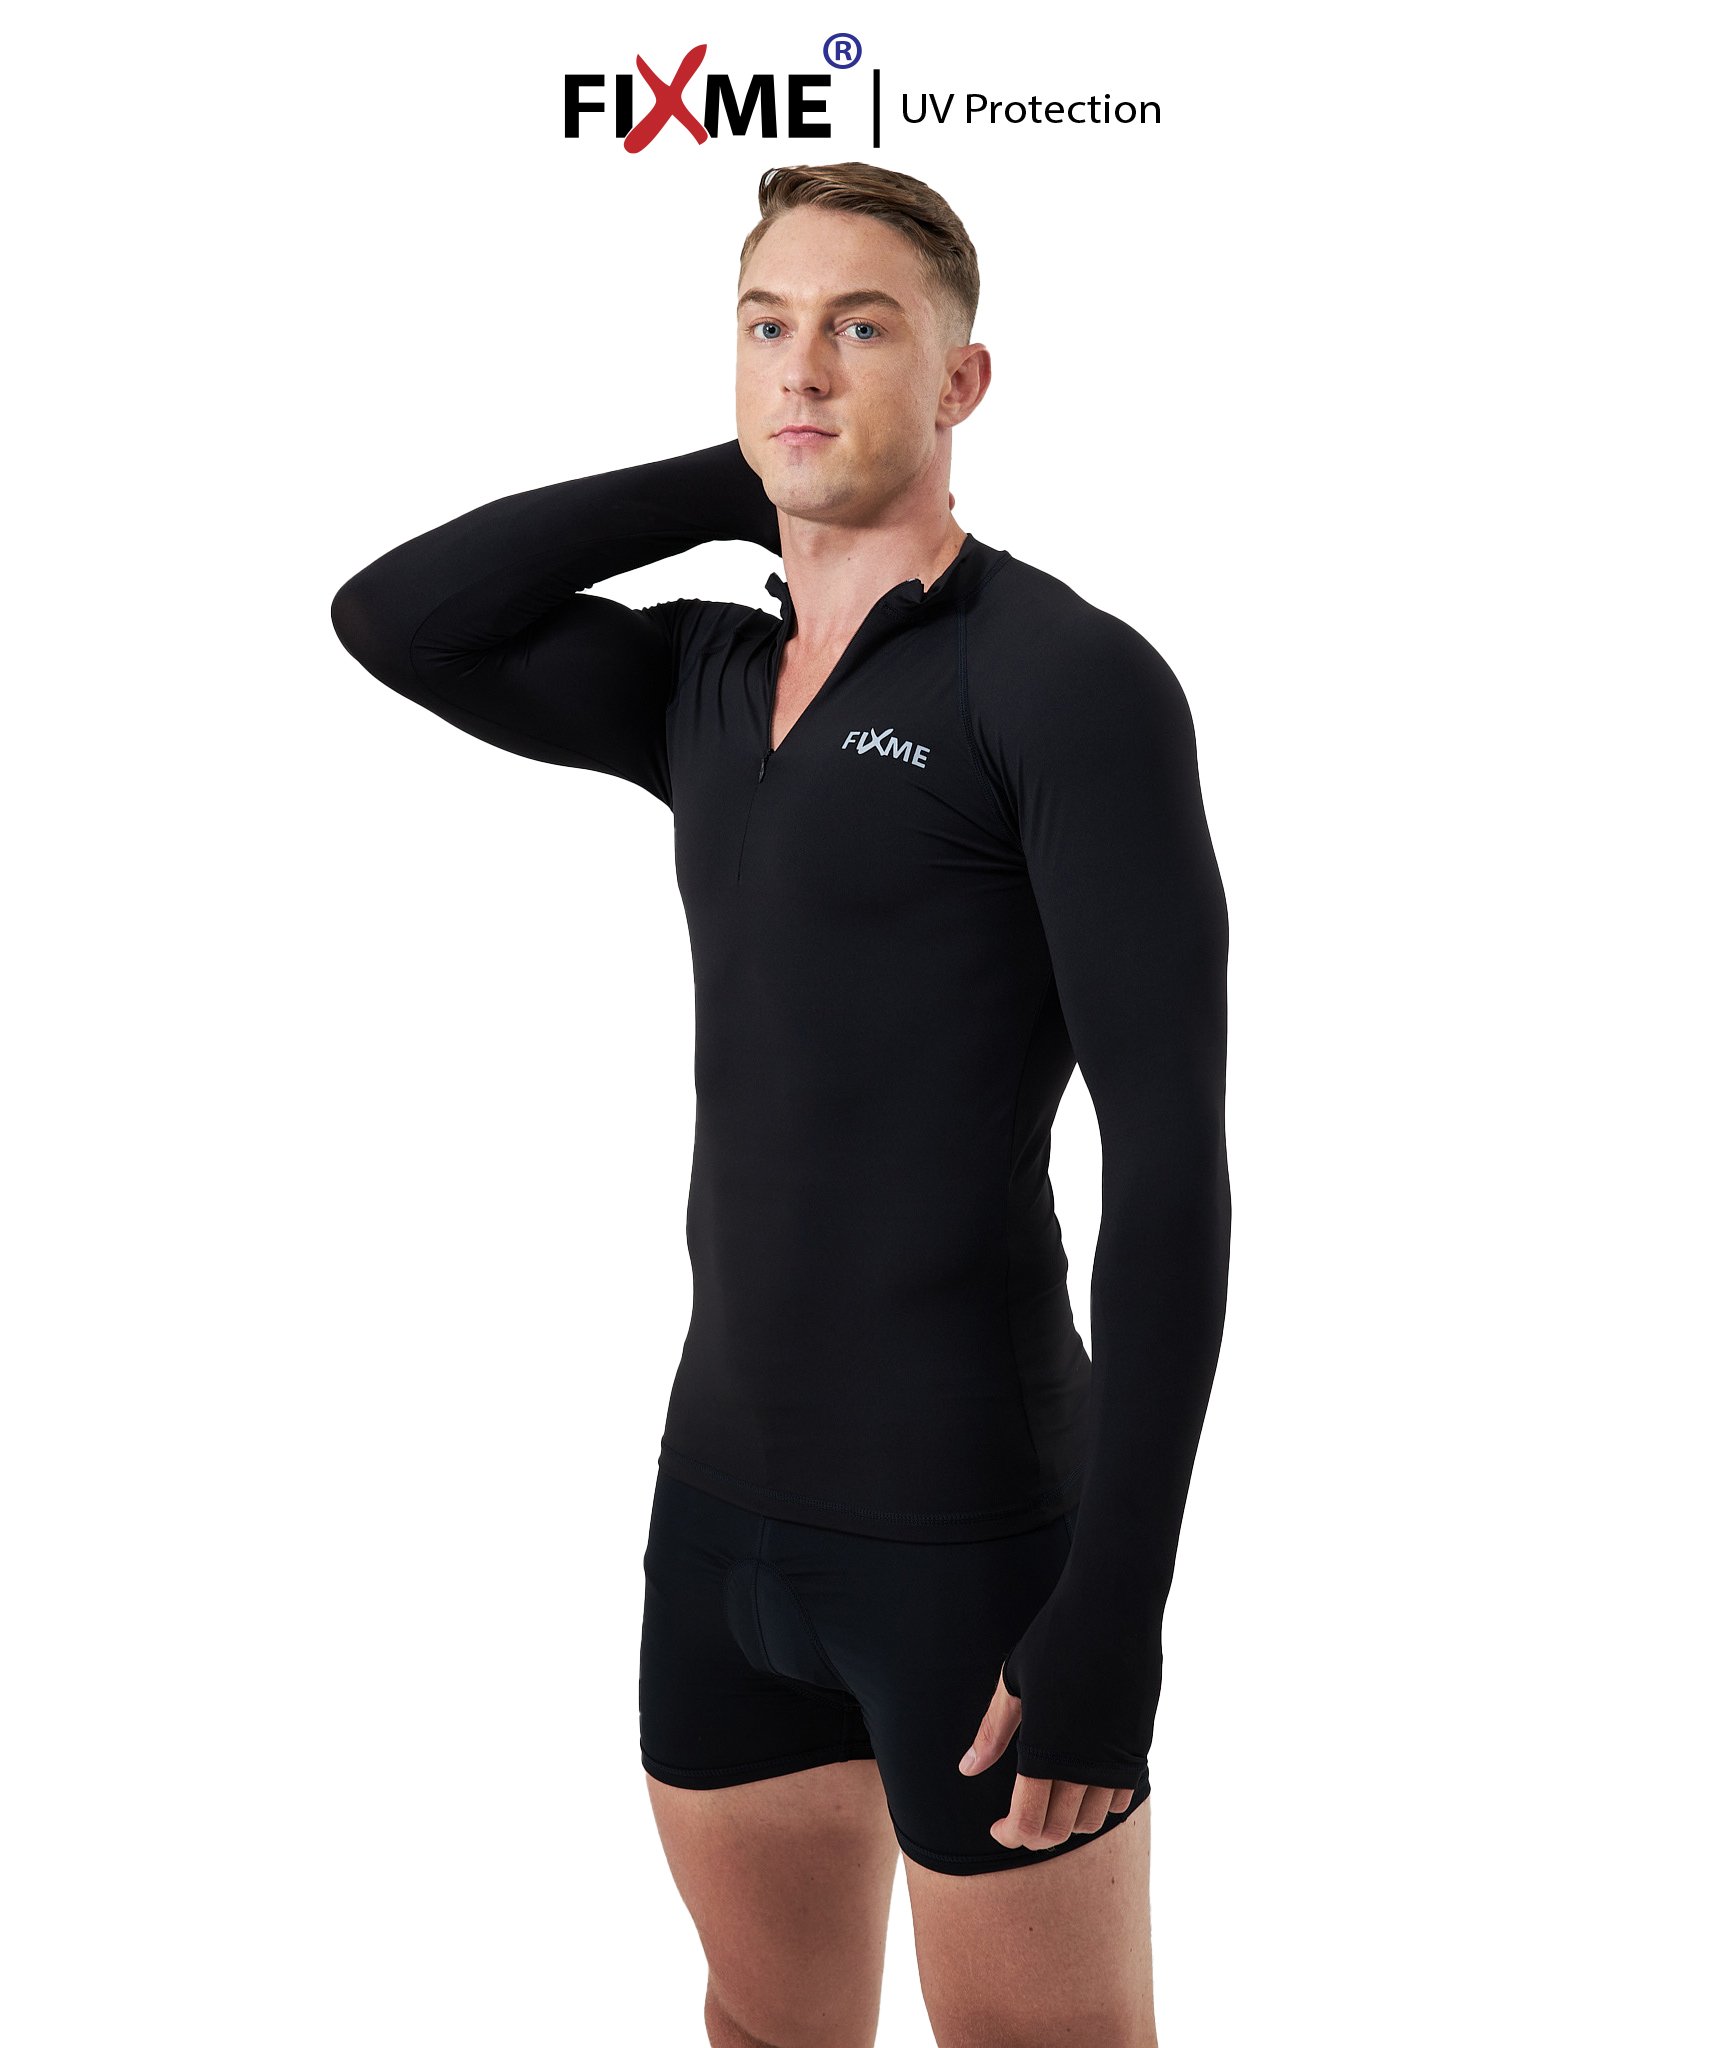 เสื้อซิปหน้า กันUV99% (ผู้ชาย) เสื้อว่ายน้ำ เสื้อวิ่งเทรล แห้งไว ไร้กลิ่น Fixmesport